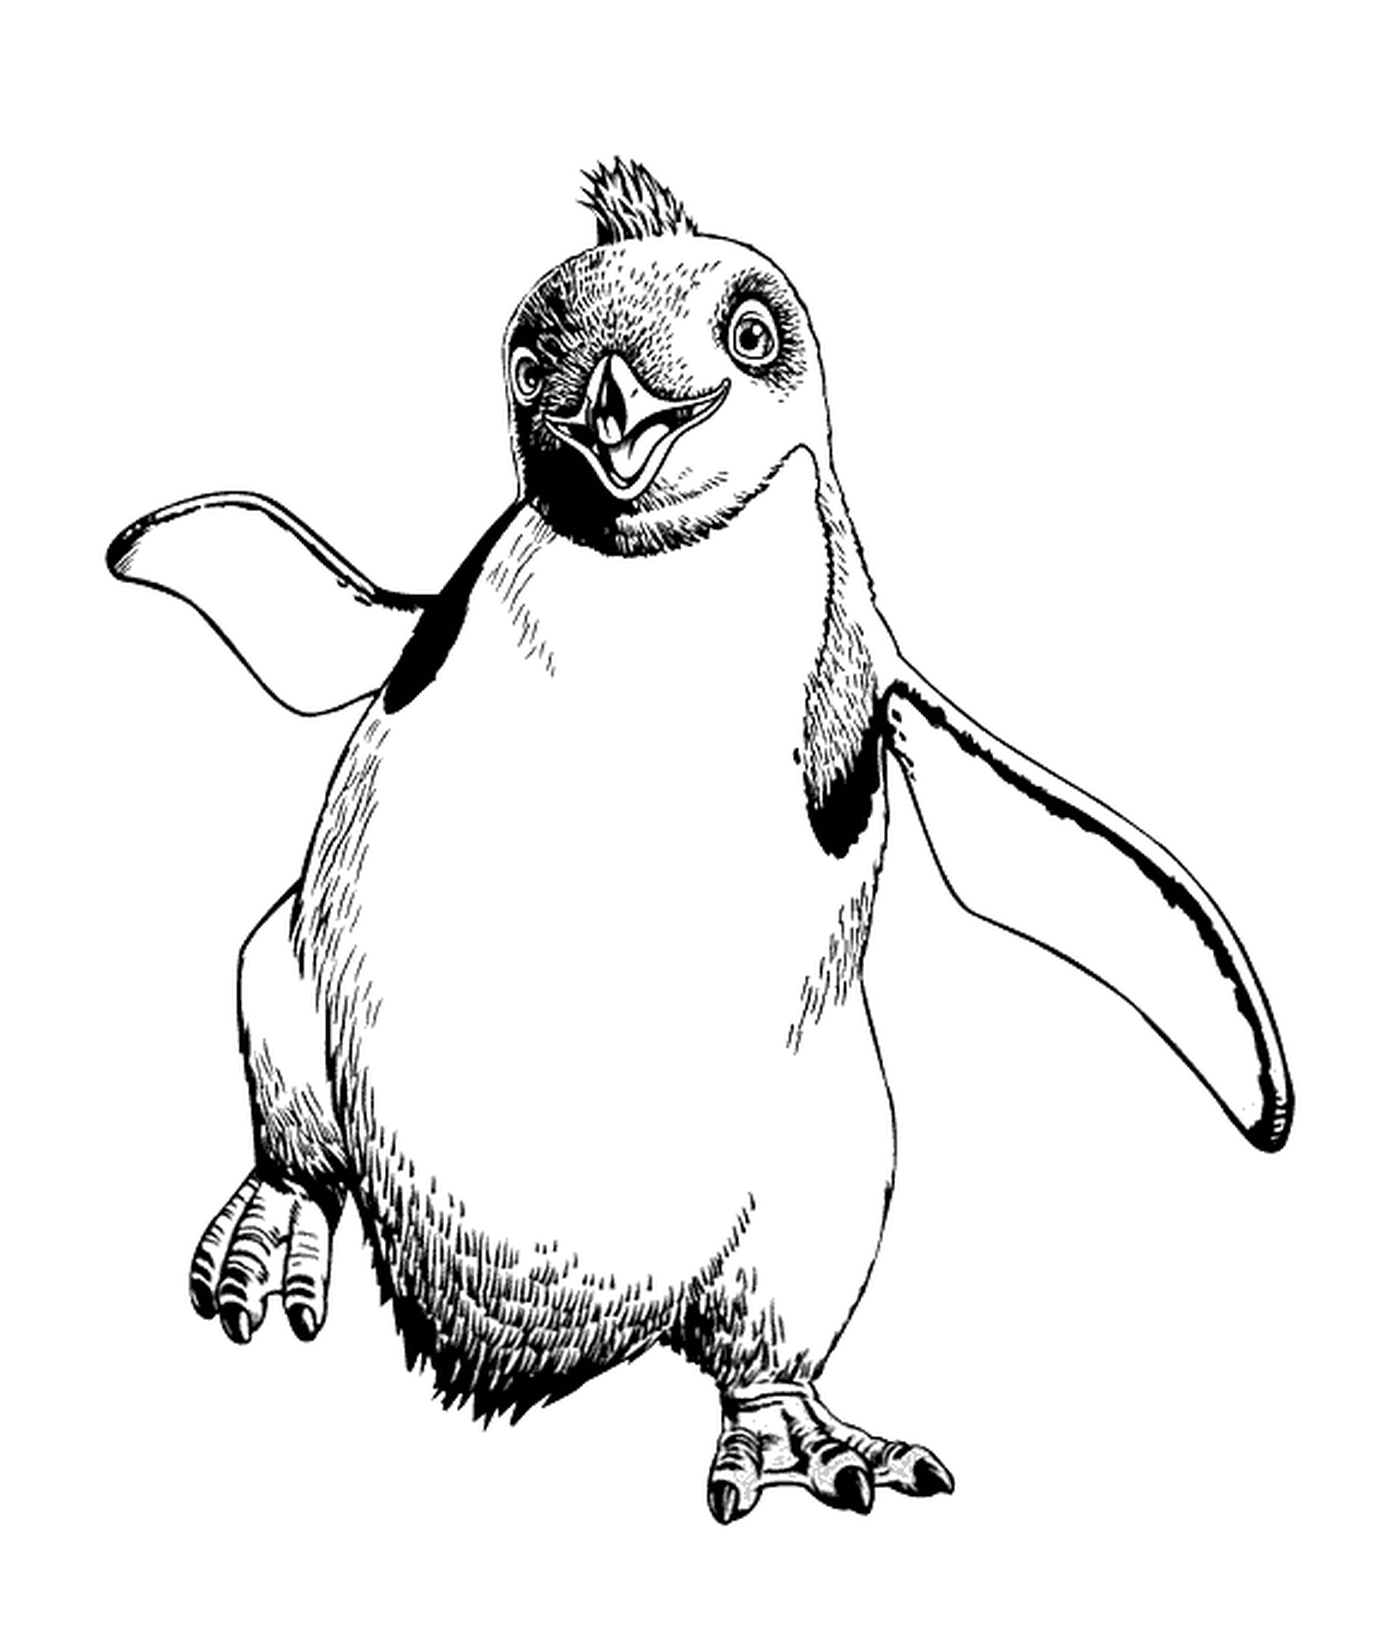  पेंगुइन चुपचाप चलते हैं 